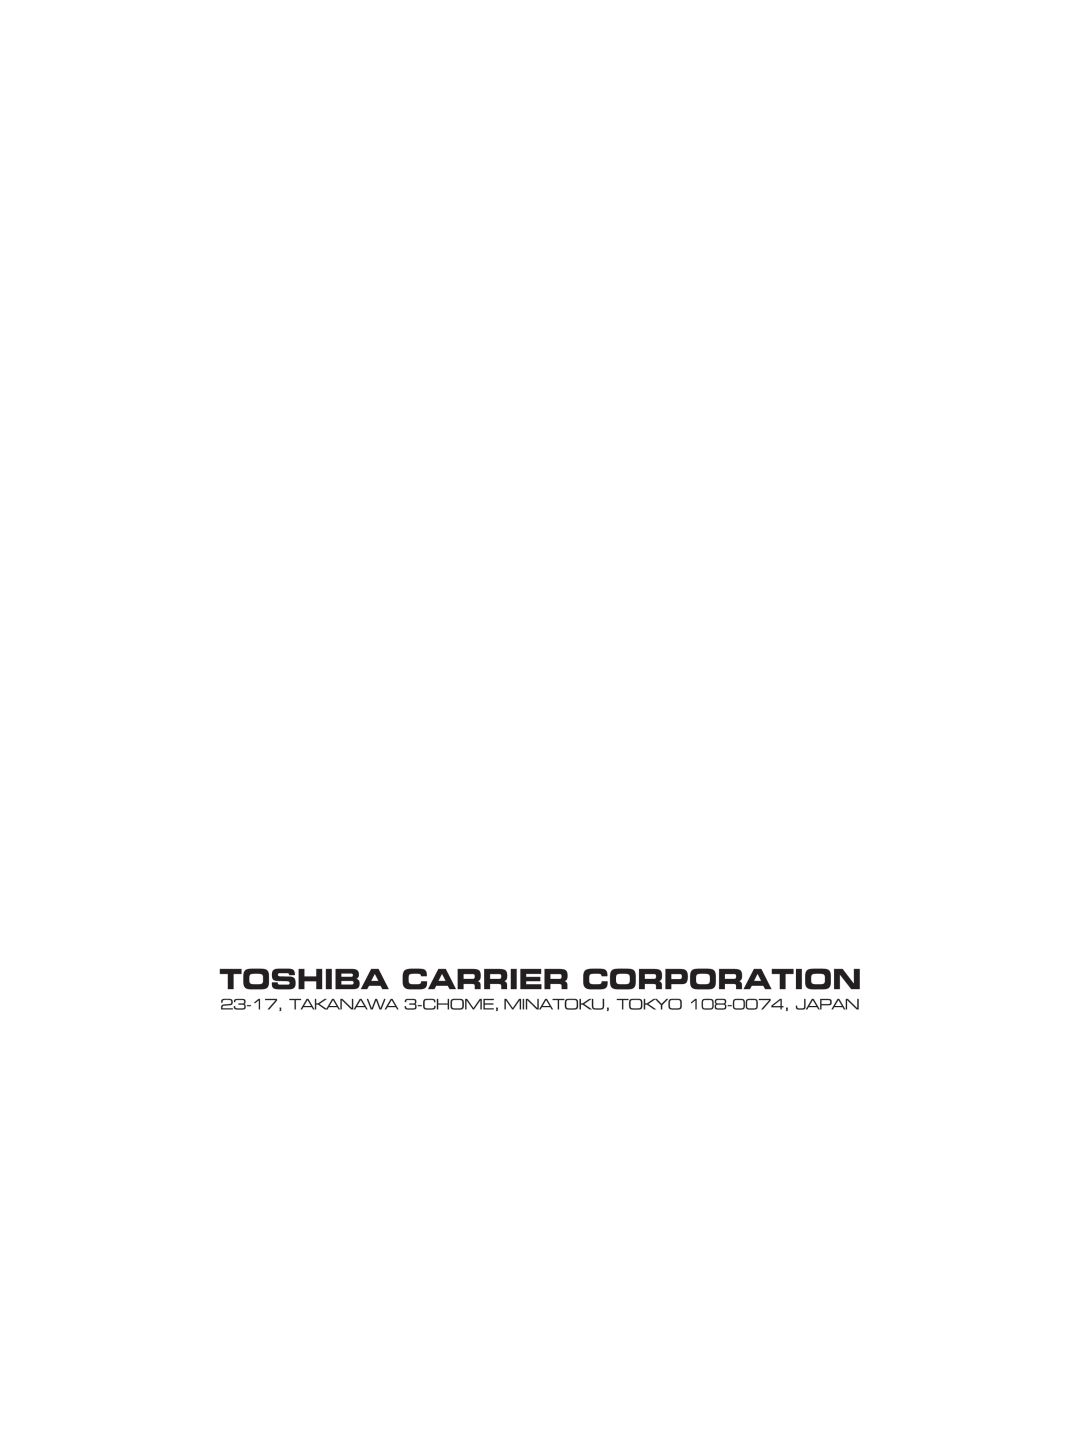 Toshiba HWS-1402XWHM3-E, HWS-802XWHT6-E, HWS-802H-E, HWS-802XWHM3-E, HWS-3001CSHM3-E(-UK), HWS-2101CSHM3-E(-UK), HWS-1402H-E 